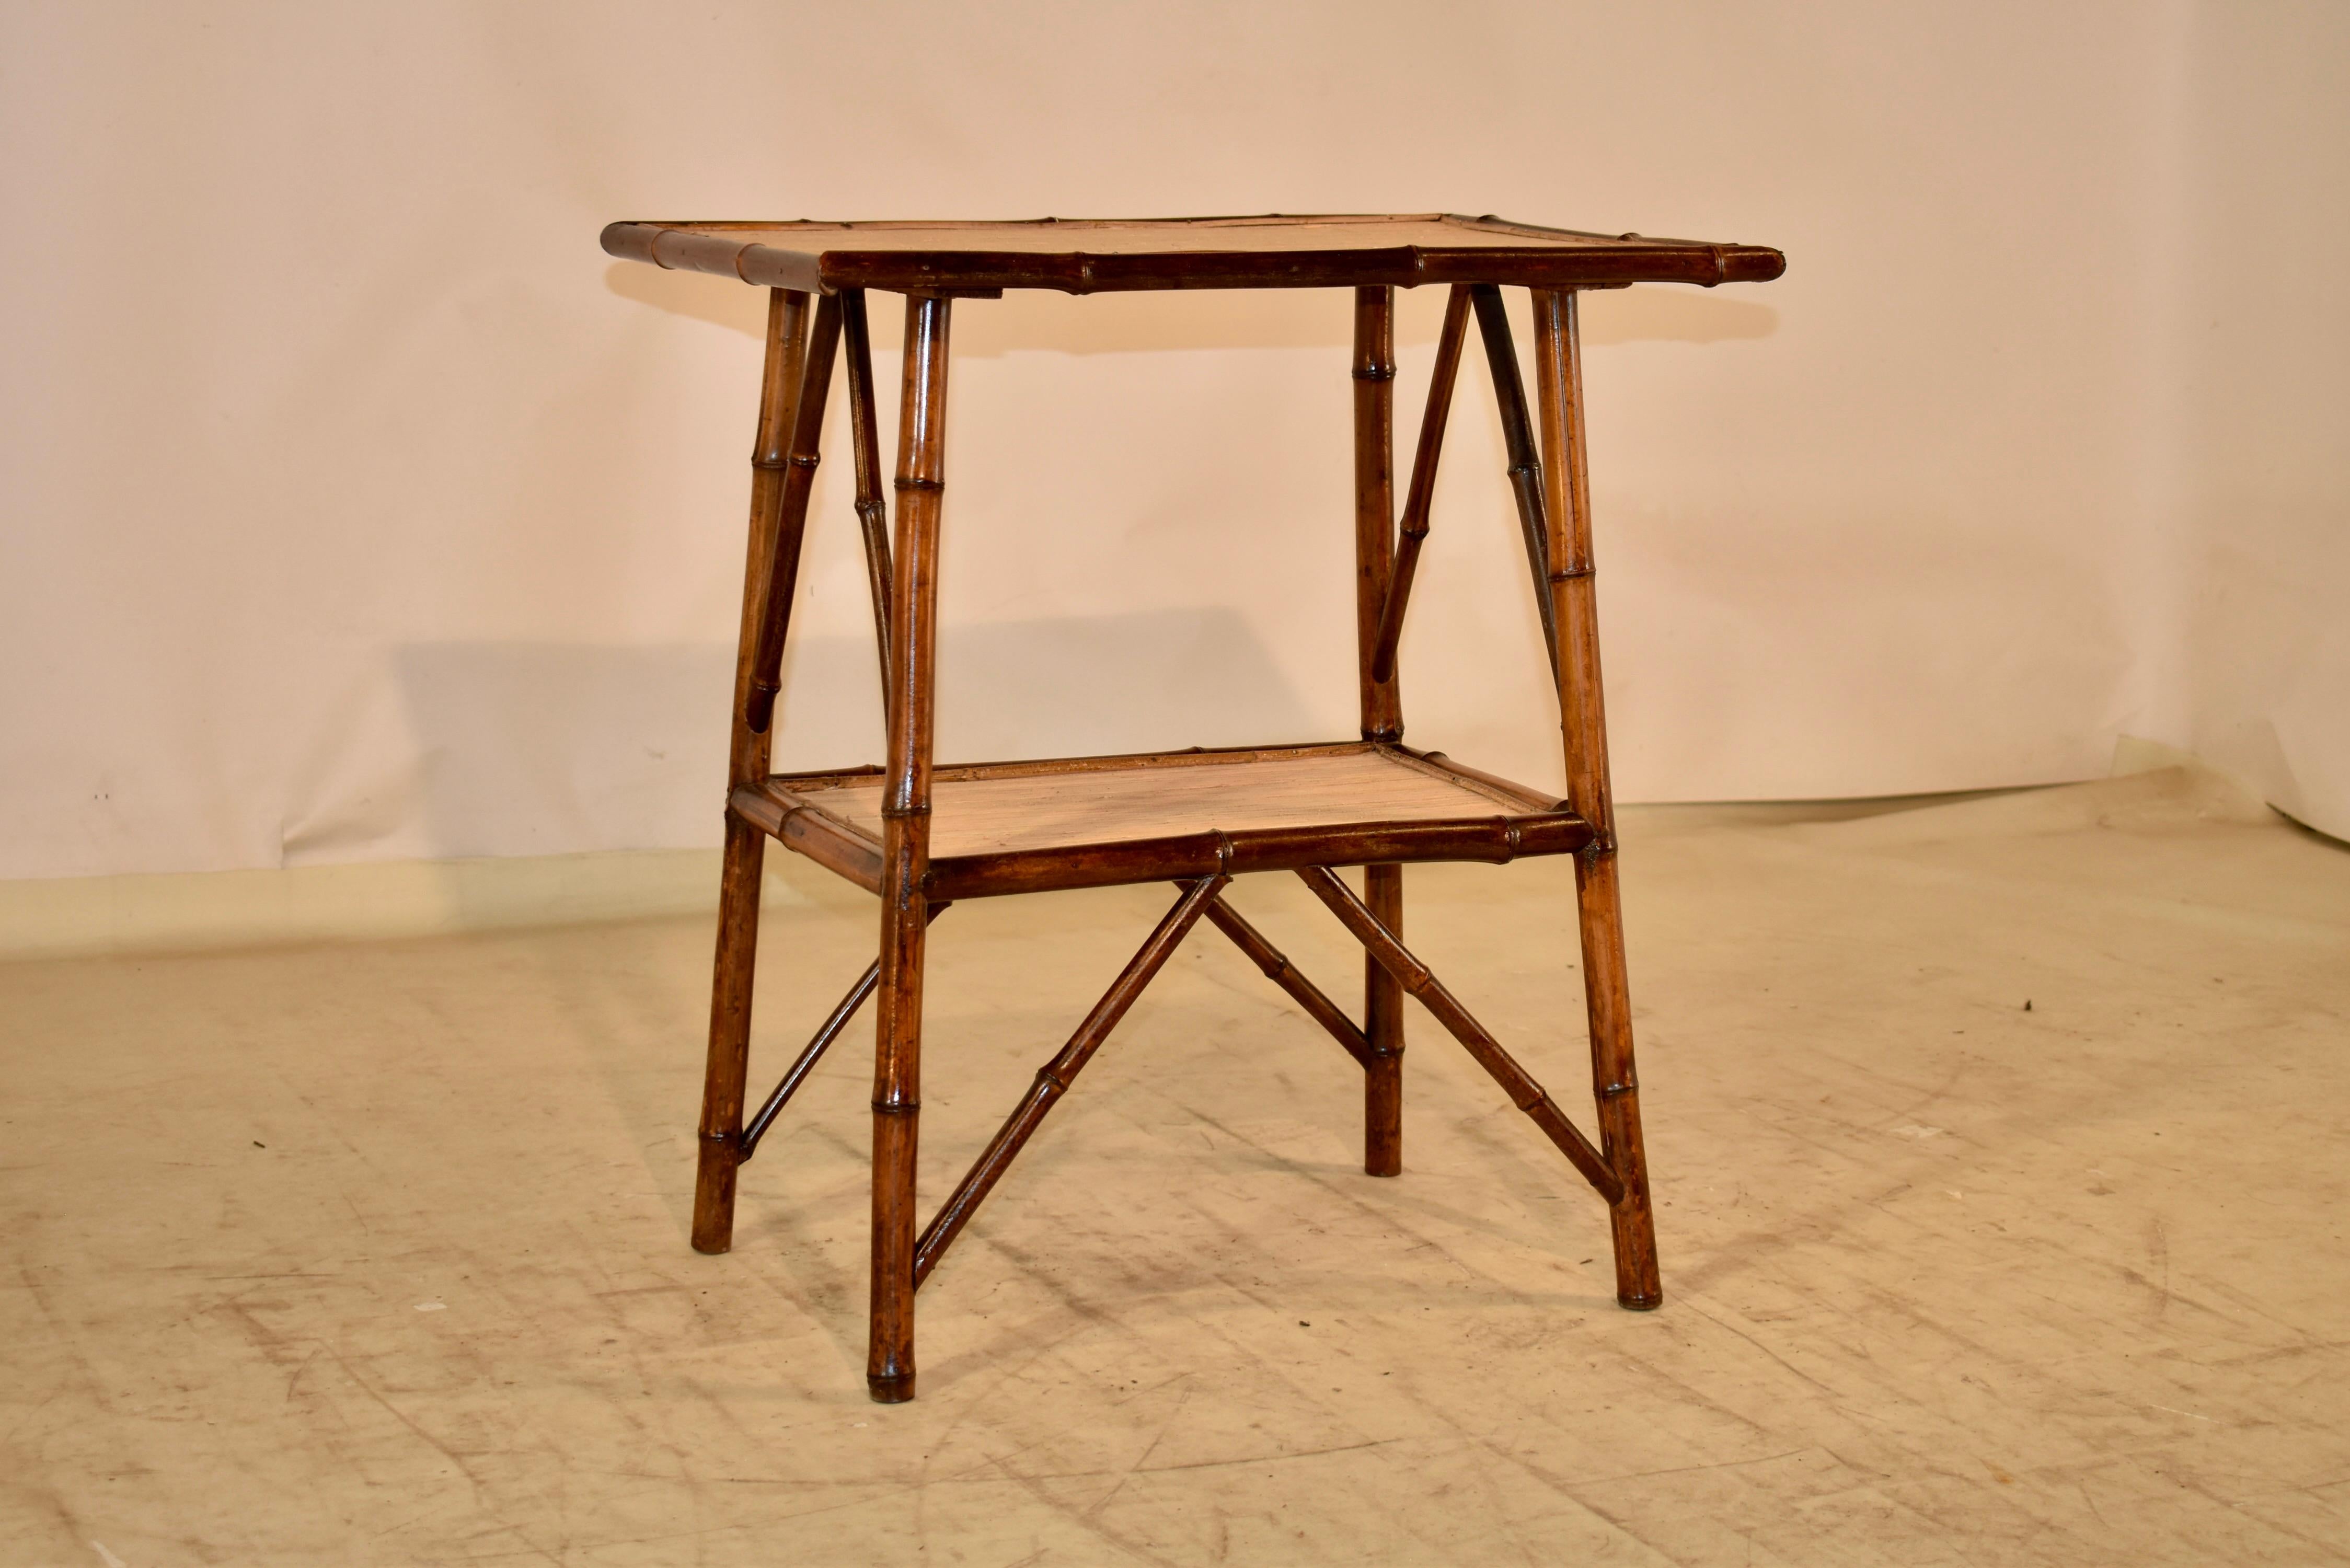 Beistelltisch aus Bambus aus dem 19. Jahrhundert aus Frankreich.  Die Tischplatte hat mit Bambus eingefasste Kanten und wird von gespreizten Bambusbeinen getragen, die durch eine untere, ebenfalls mit Bambus eingefasste Ablage verbunden sind. 